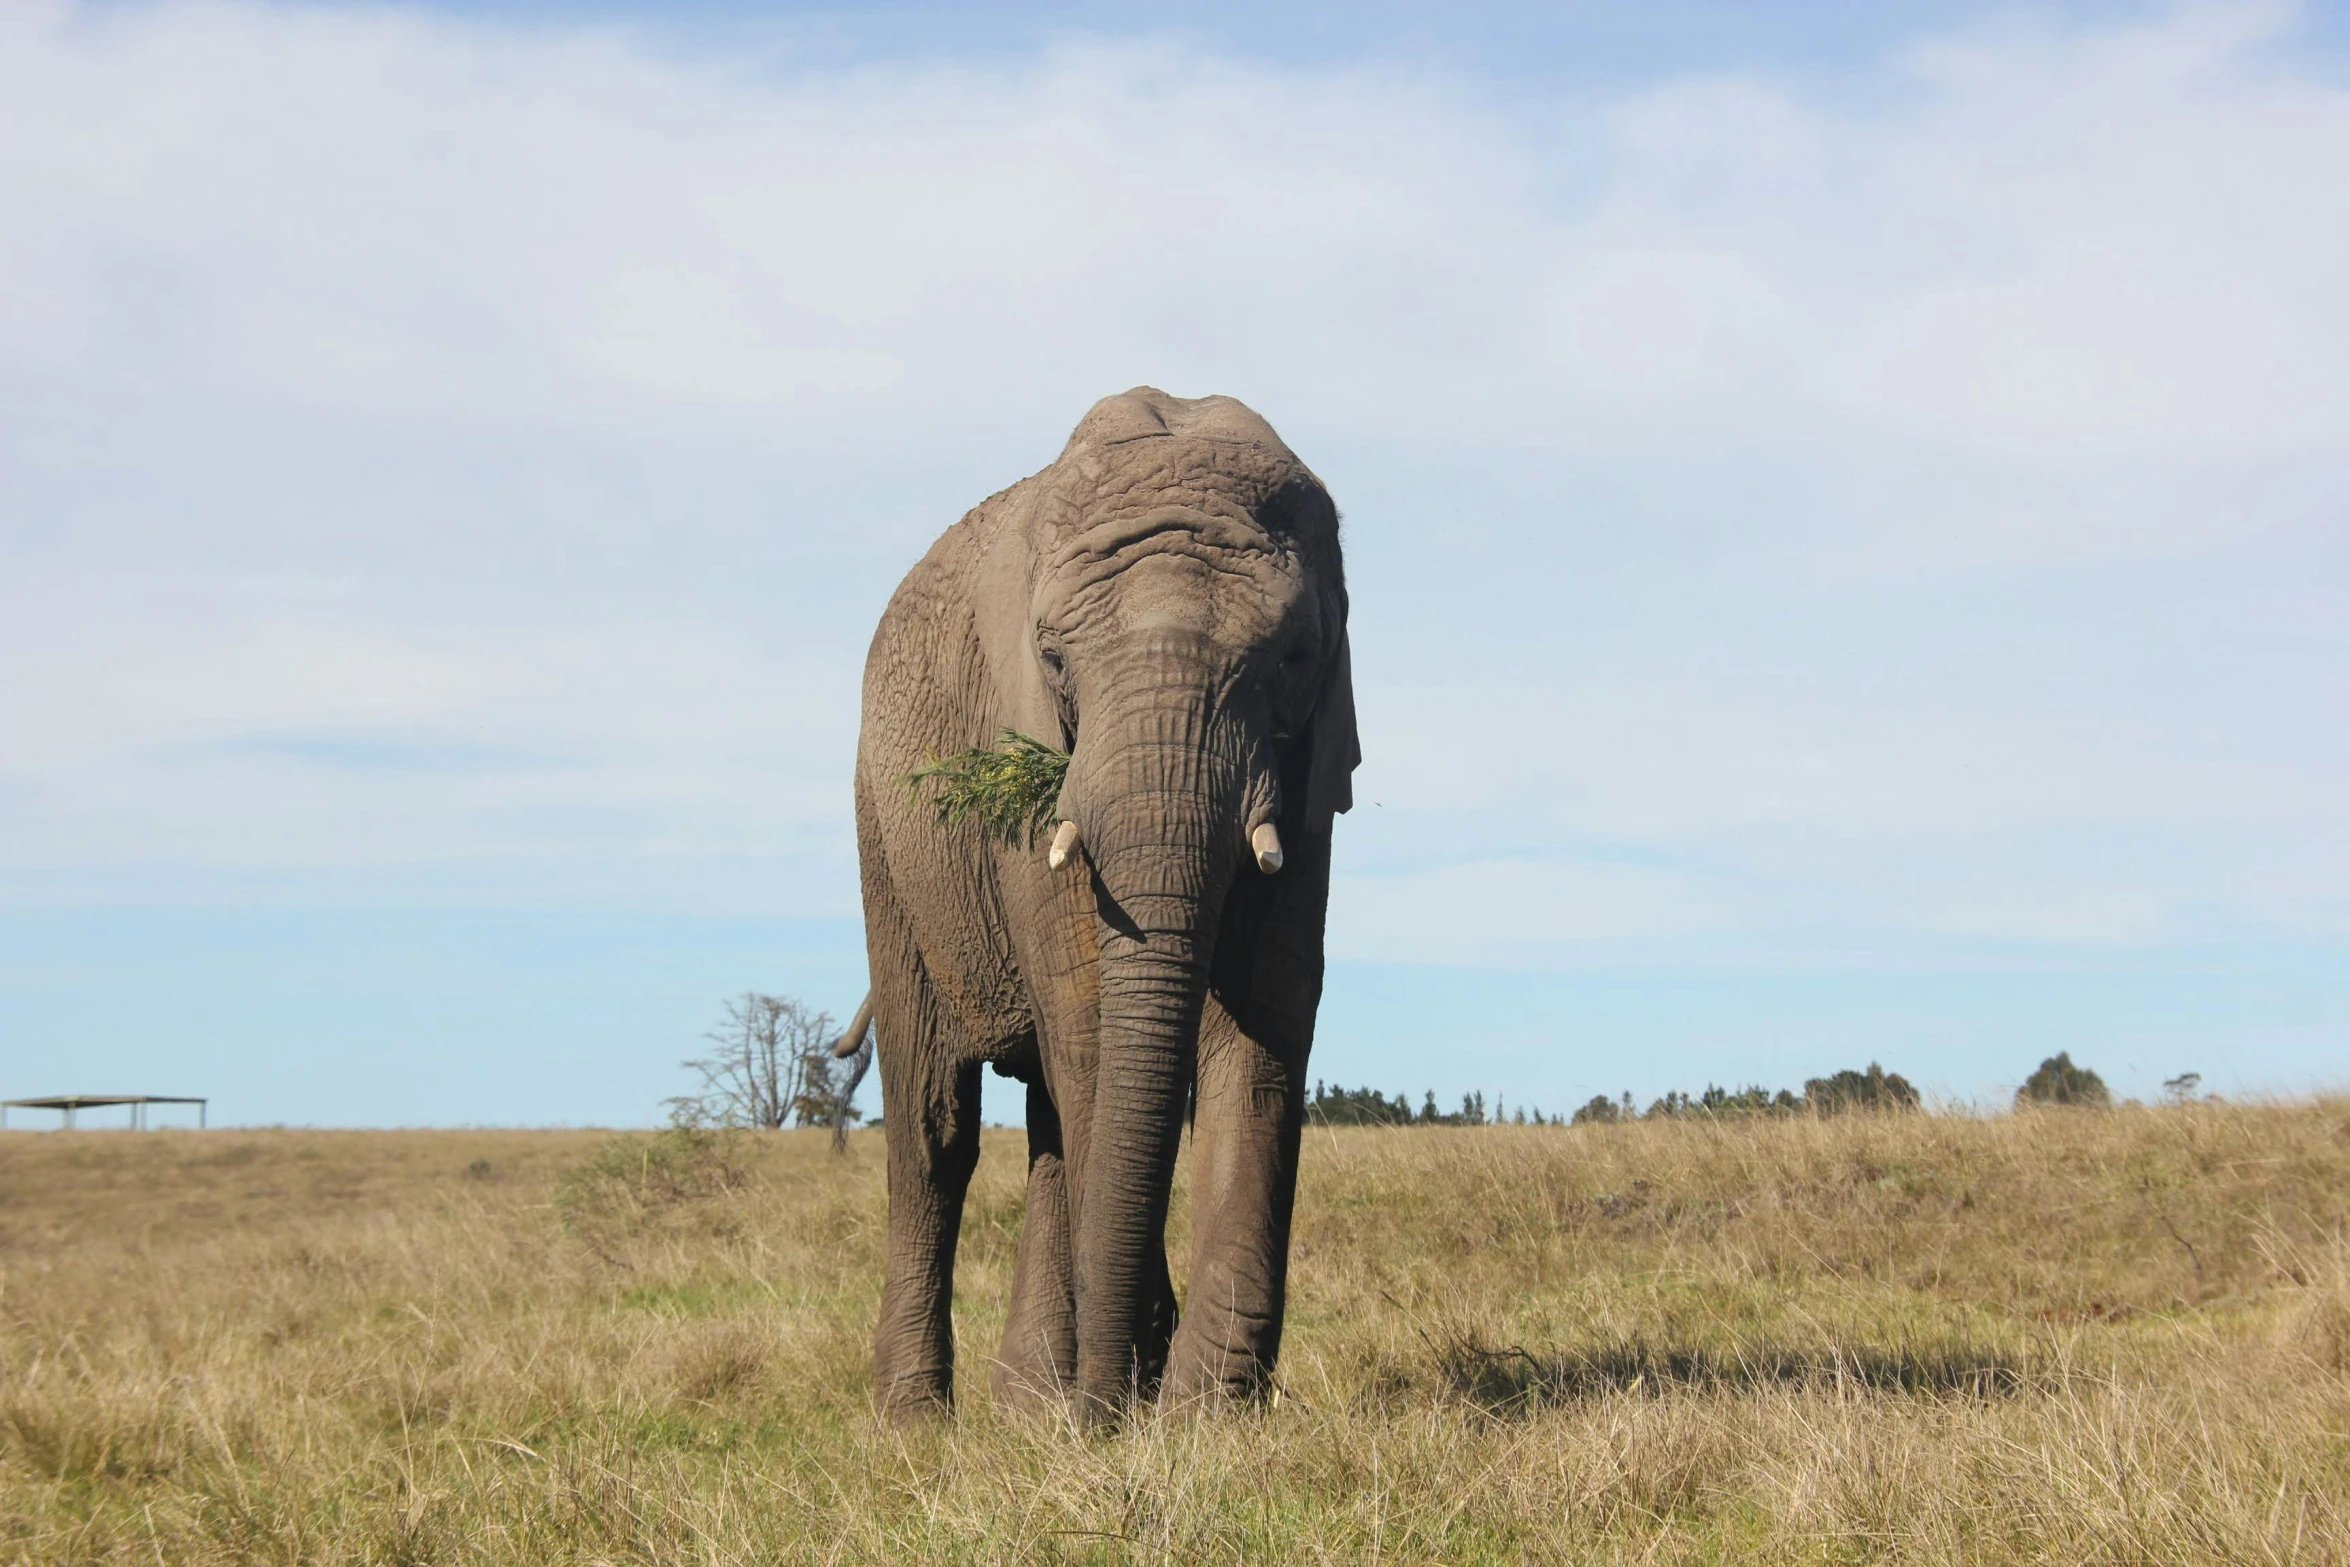 an elephant walking across a lush green field